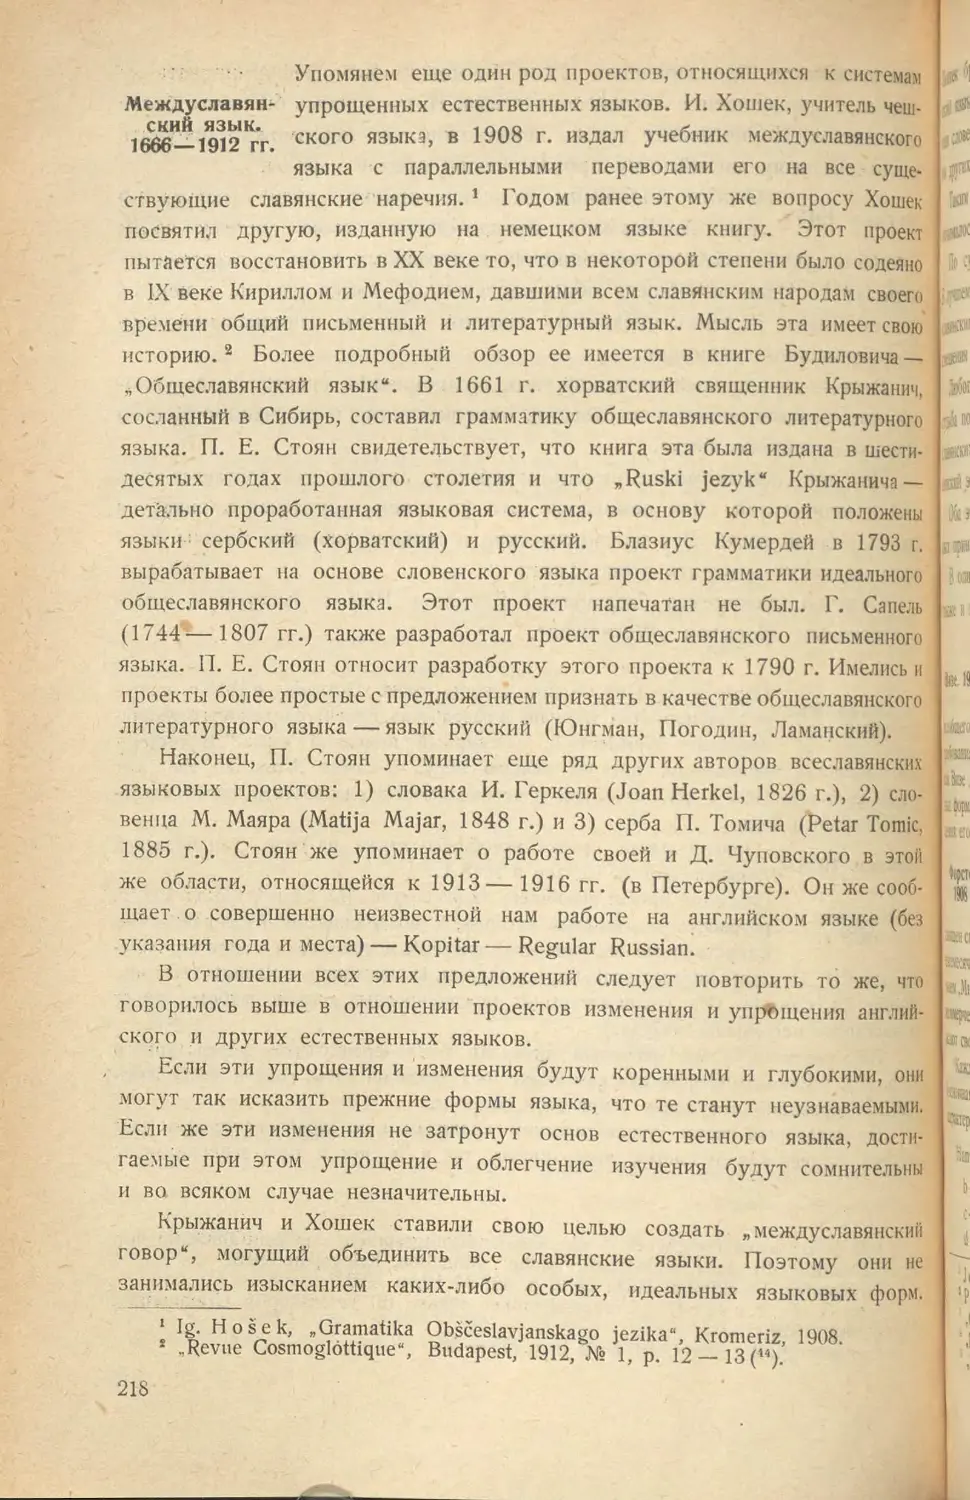 Междуславянский язык. 1666-1912